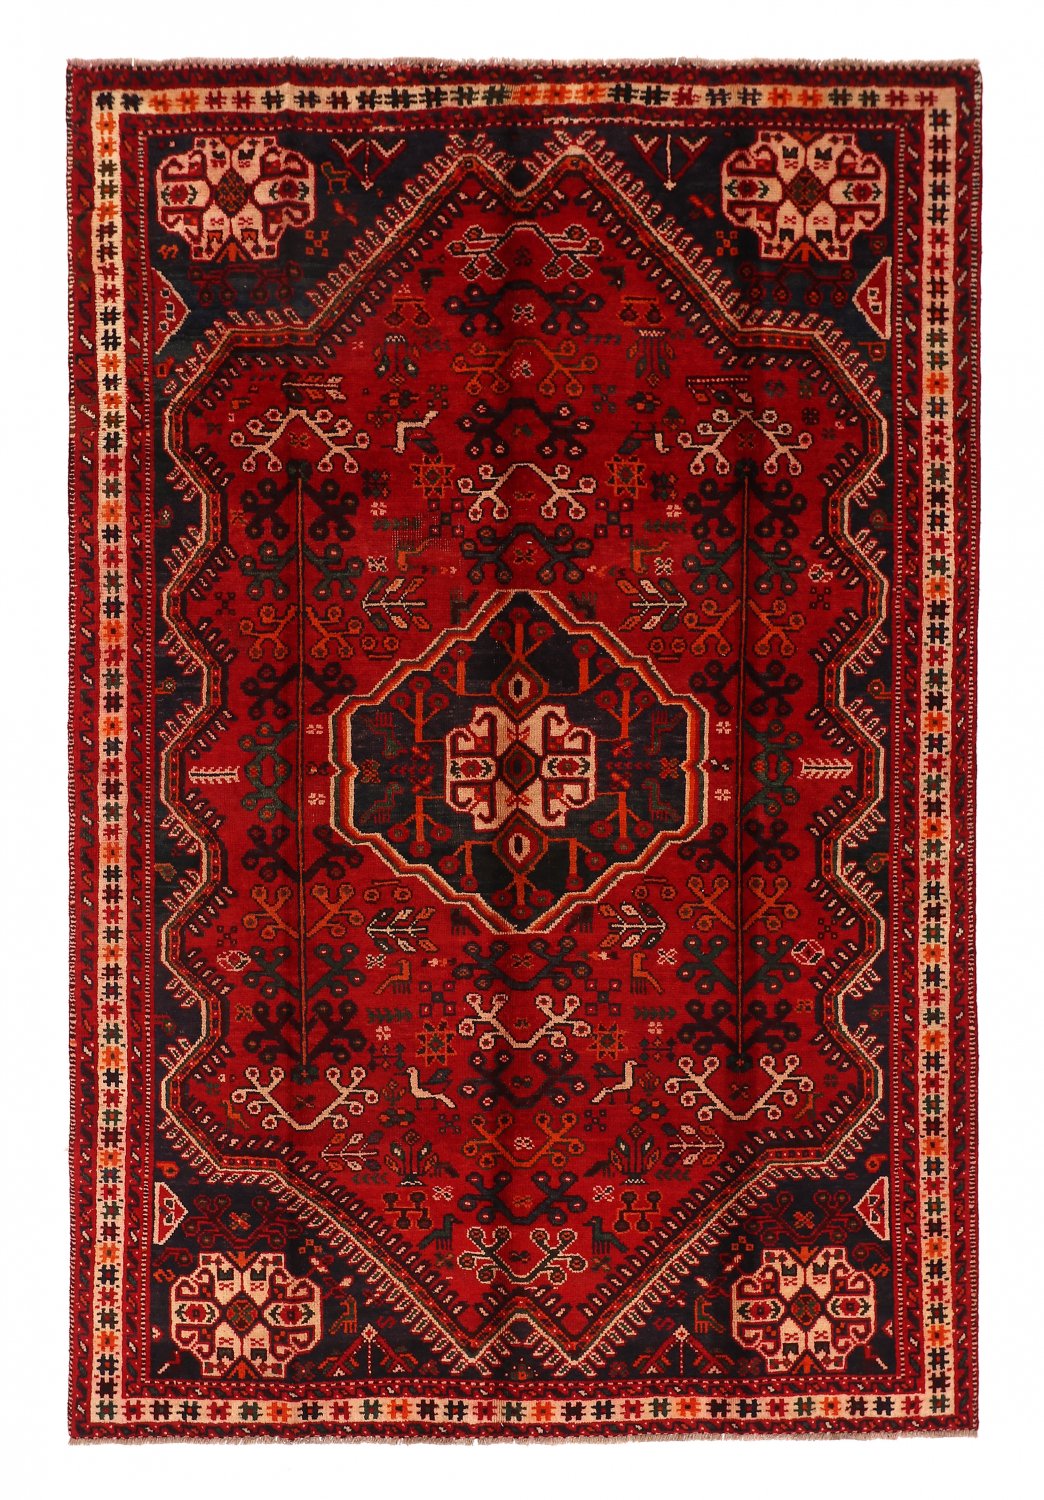 Persian rug Hamedan 294 x 195 cm